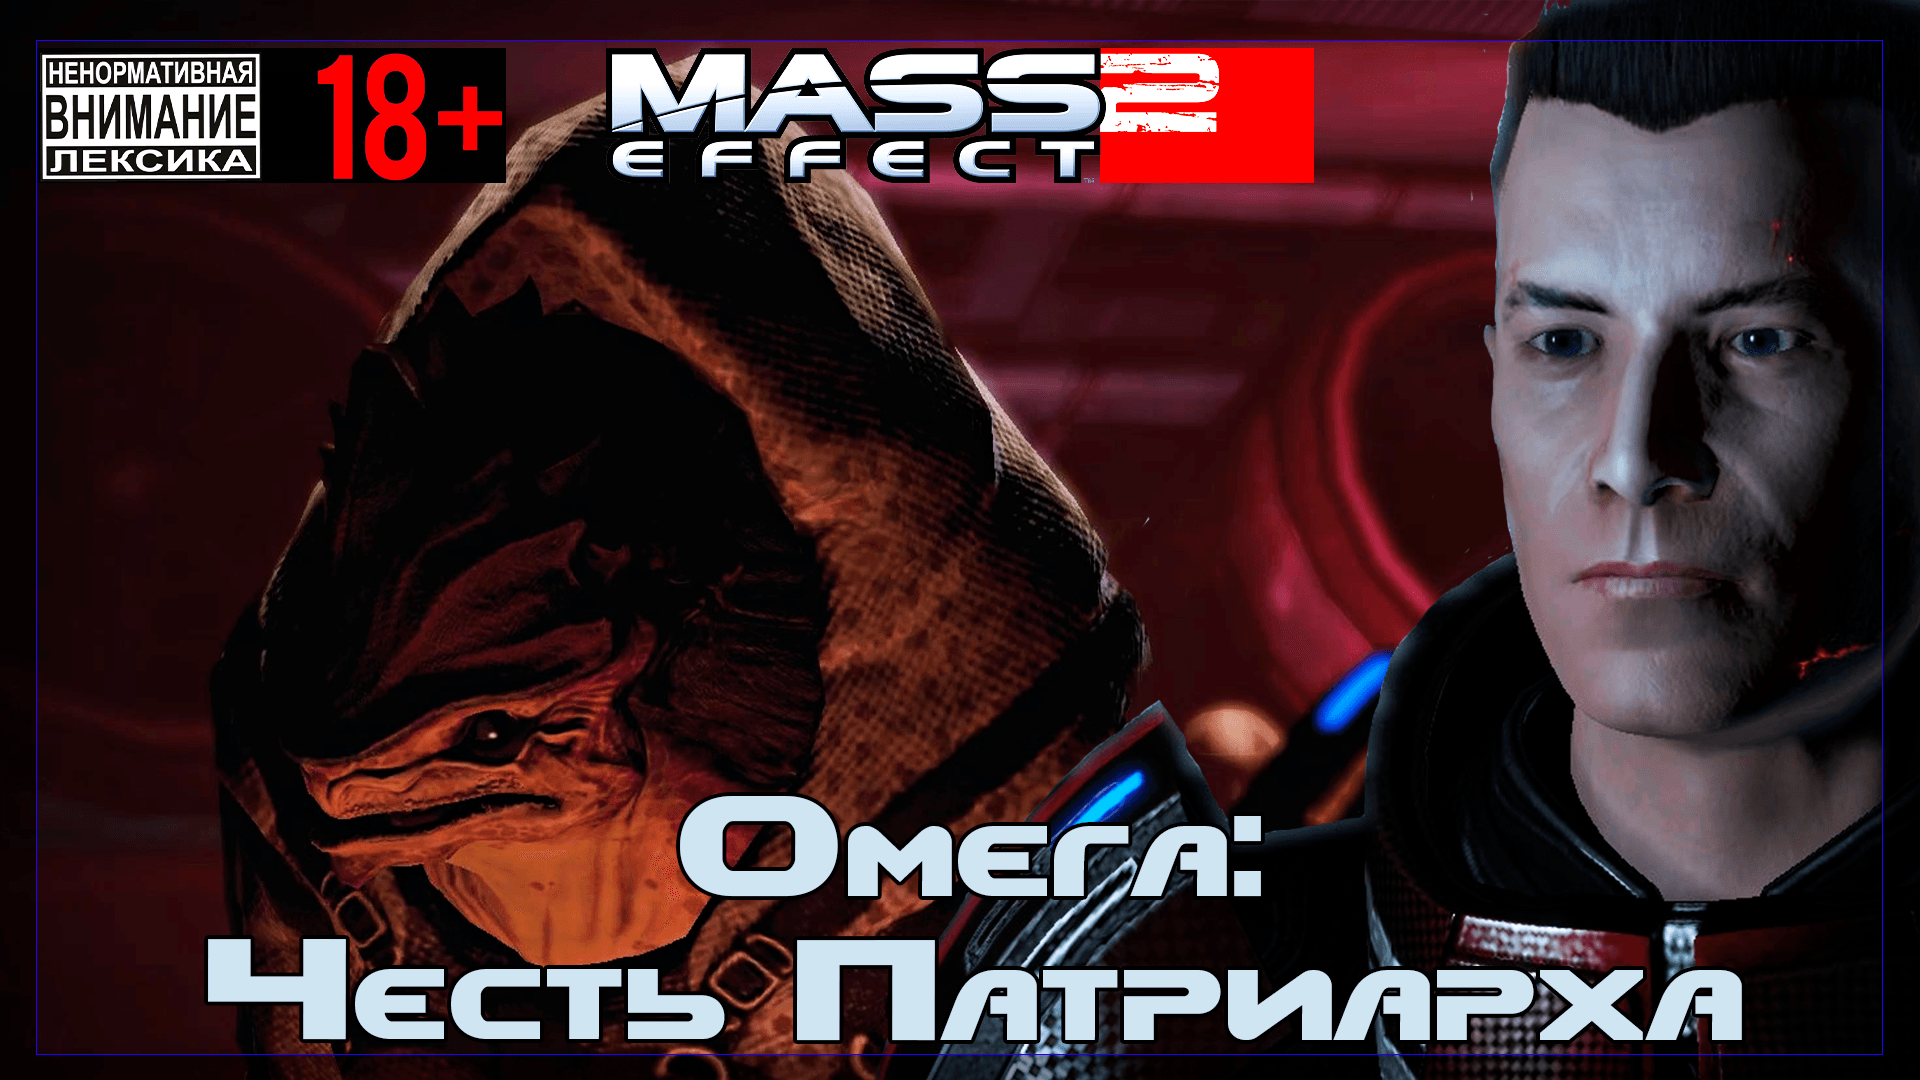 Mass Effect 2 / Original #11 Омега: Честь Патриарха